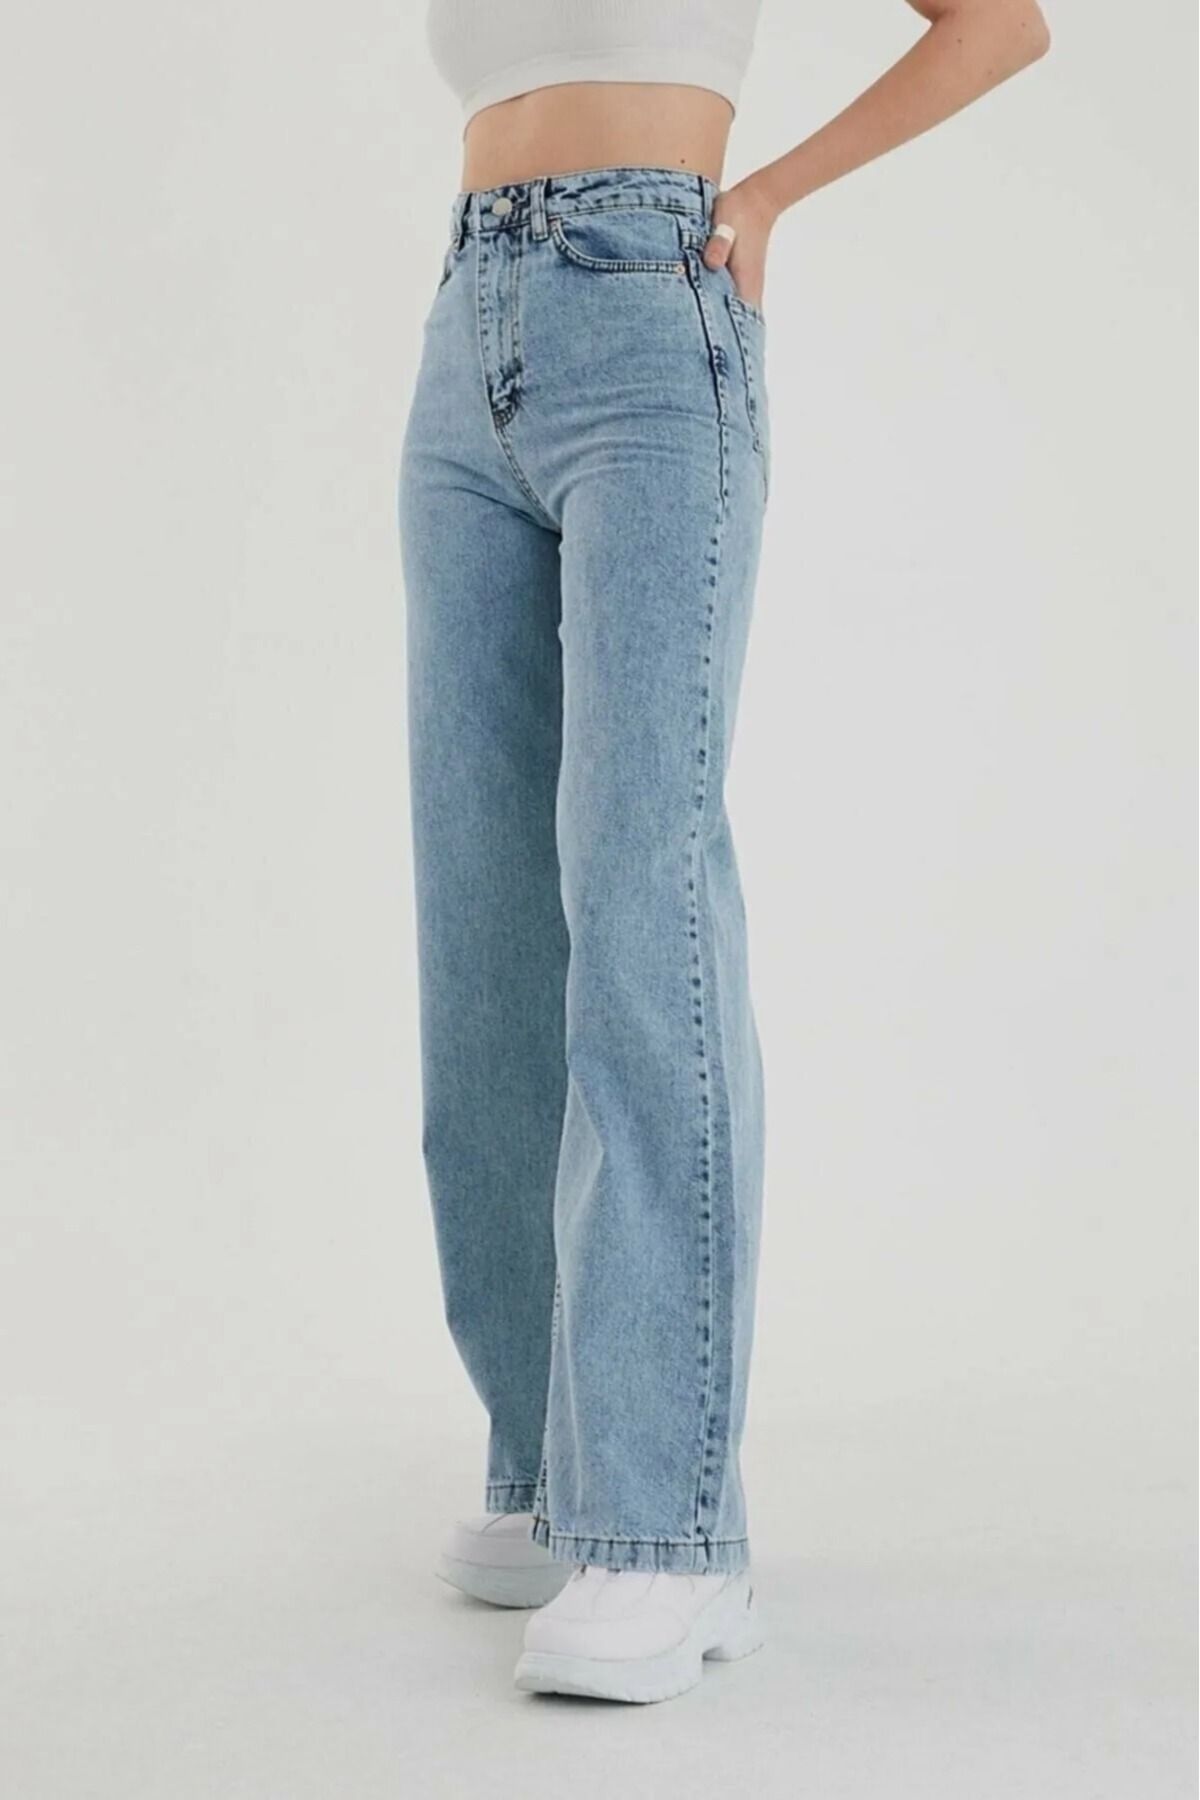 comfort jeans Kar Mavi Yüksek Bel Salaş Pantolon, Geniş Paça Pantolon, Bol Paça Pantalon Yıkamalı Palazzo Jeans